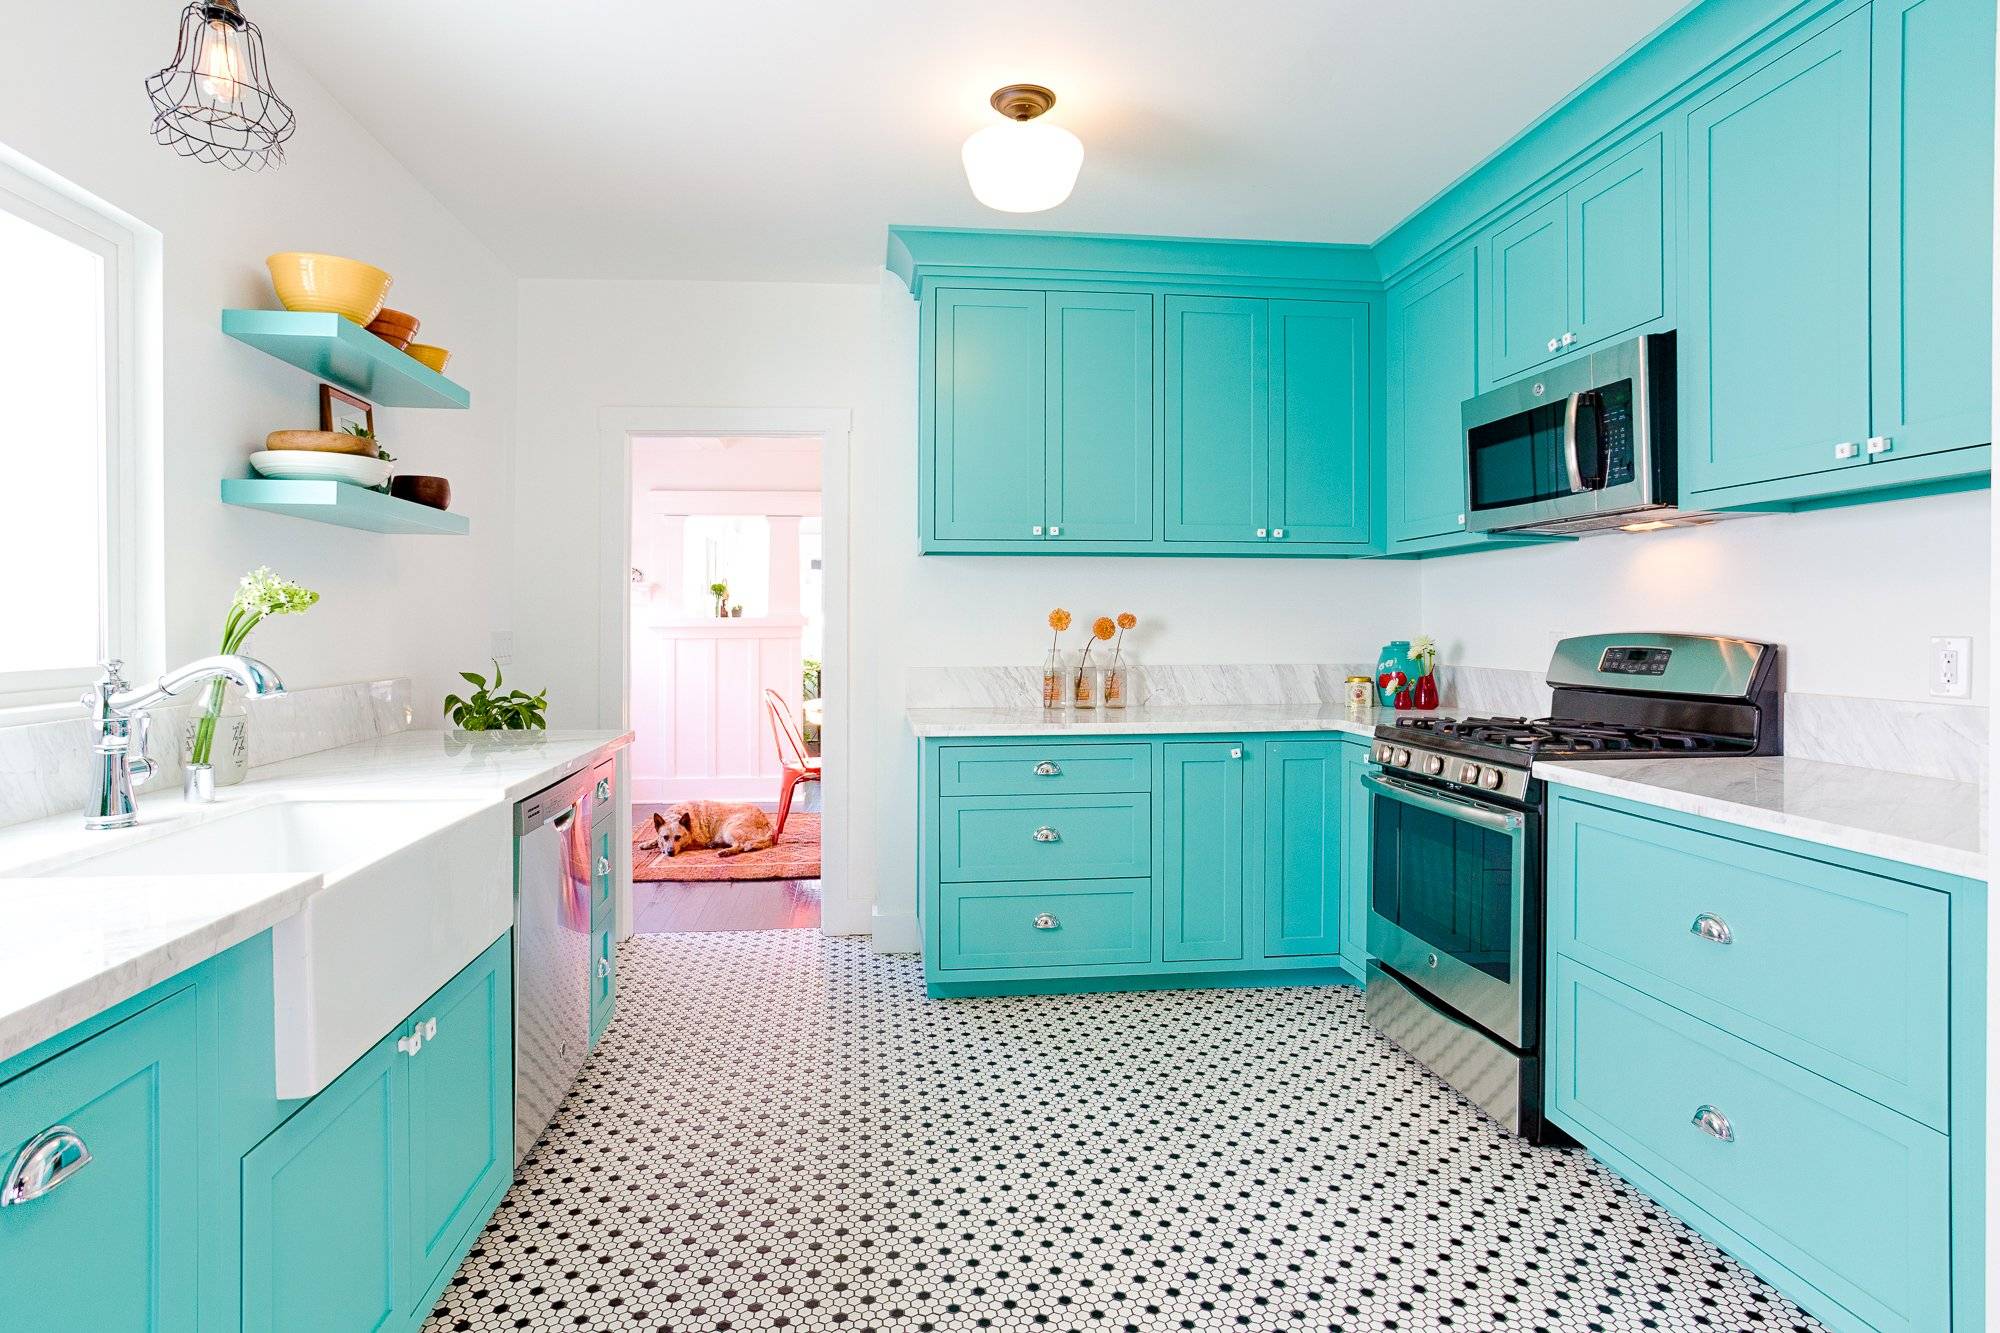 Голубая кухня в интерьере: фото лучших идей дизайна кухни в голубых тонах